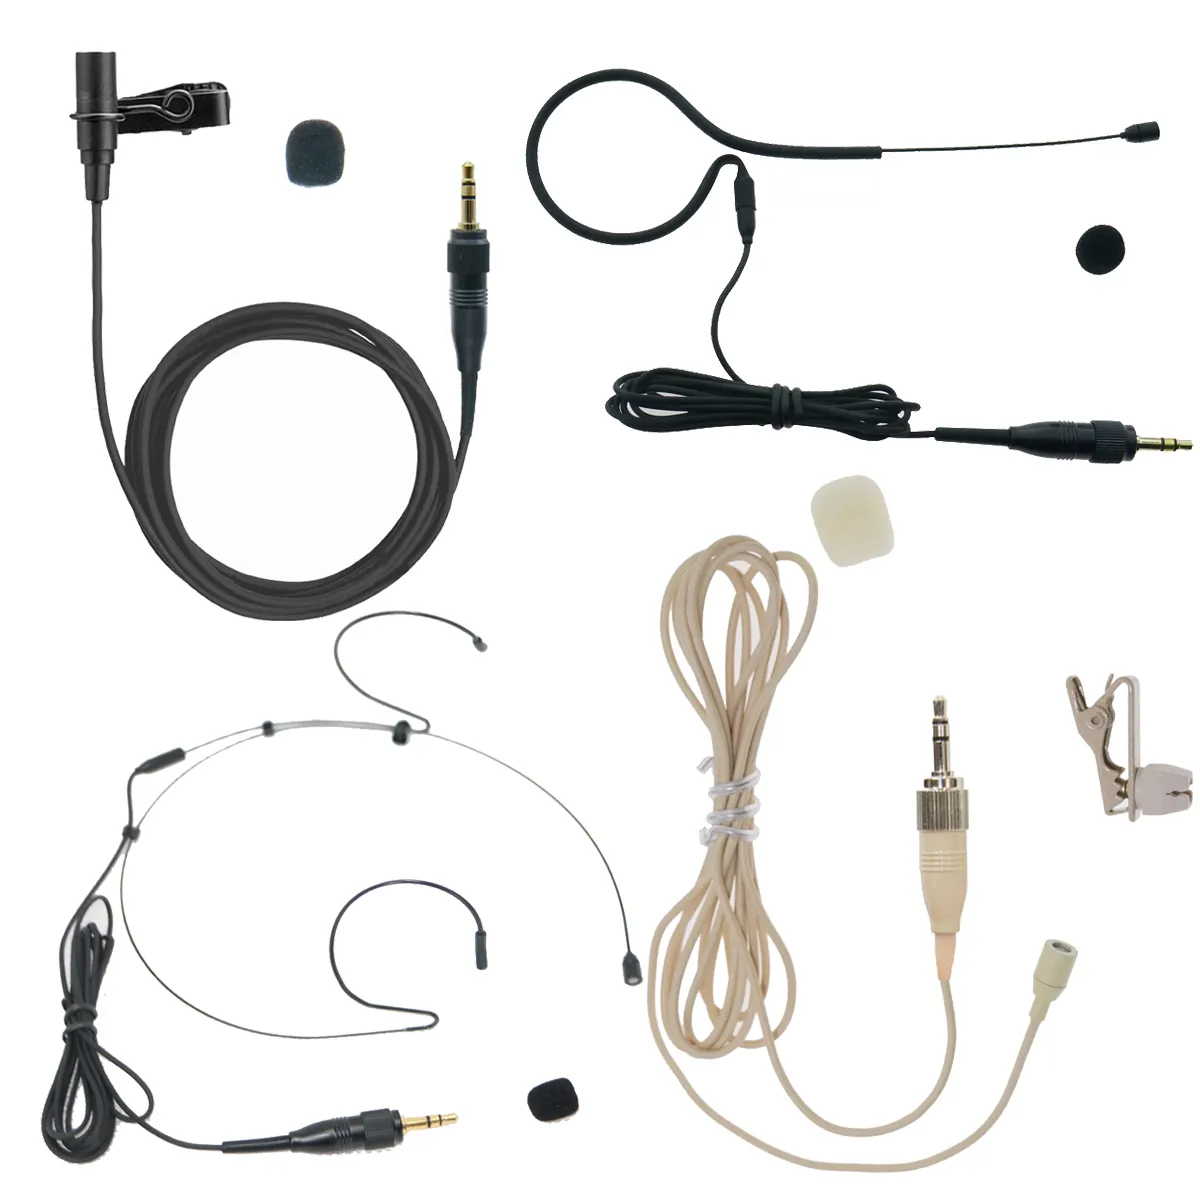 4 Type ECM Tie Lavalier Lapel Headset Microphone For UWP UTX D21 D11 V1 UTX-B2 UWP-D16 Wireless BeltPack Transmitter